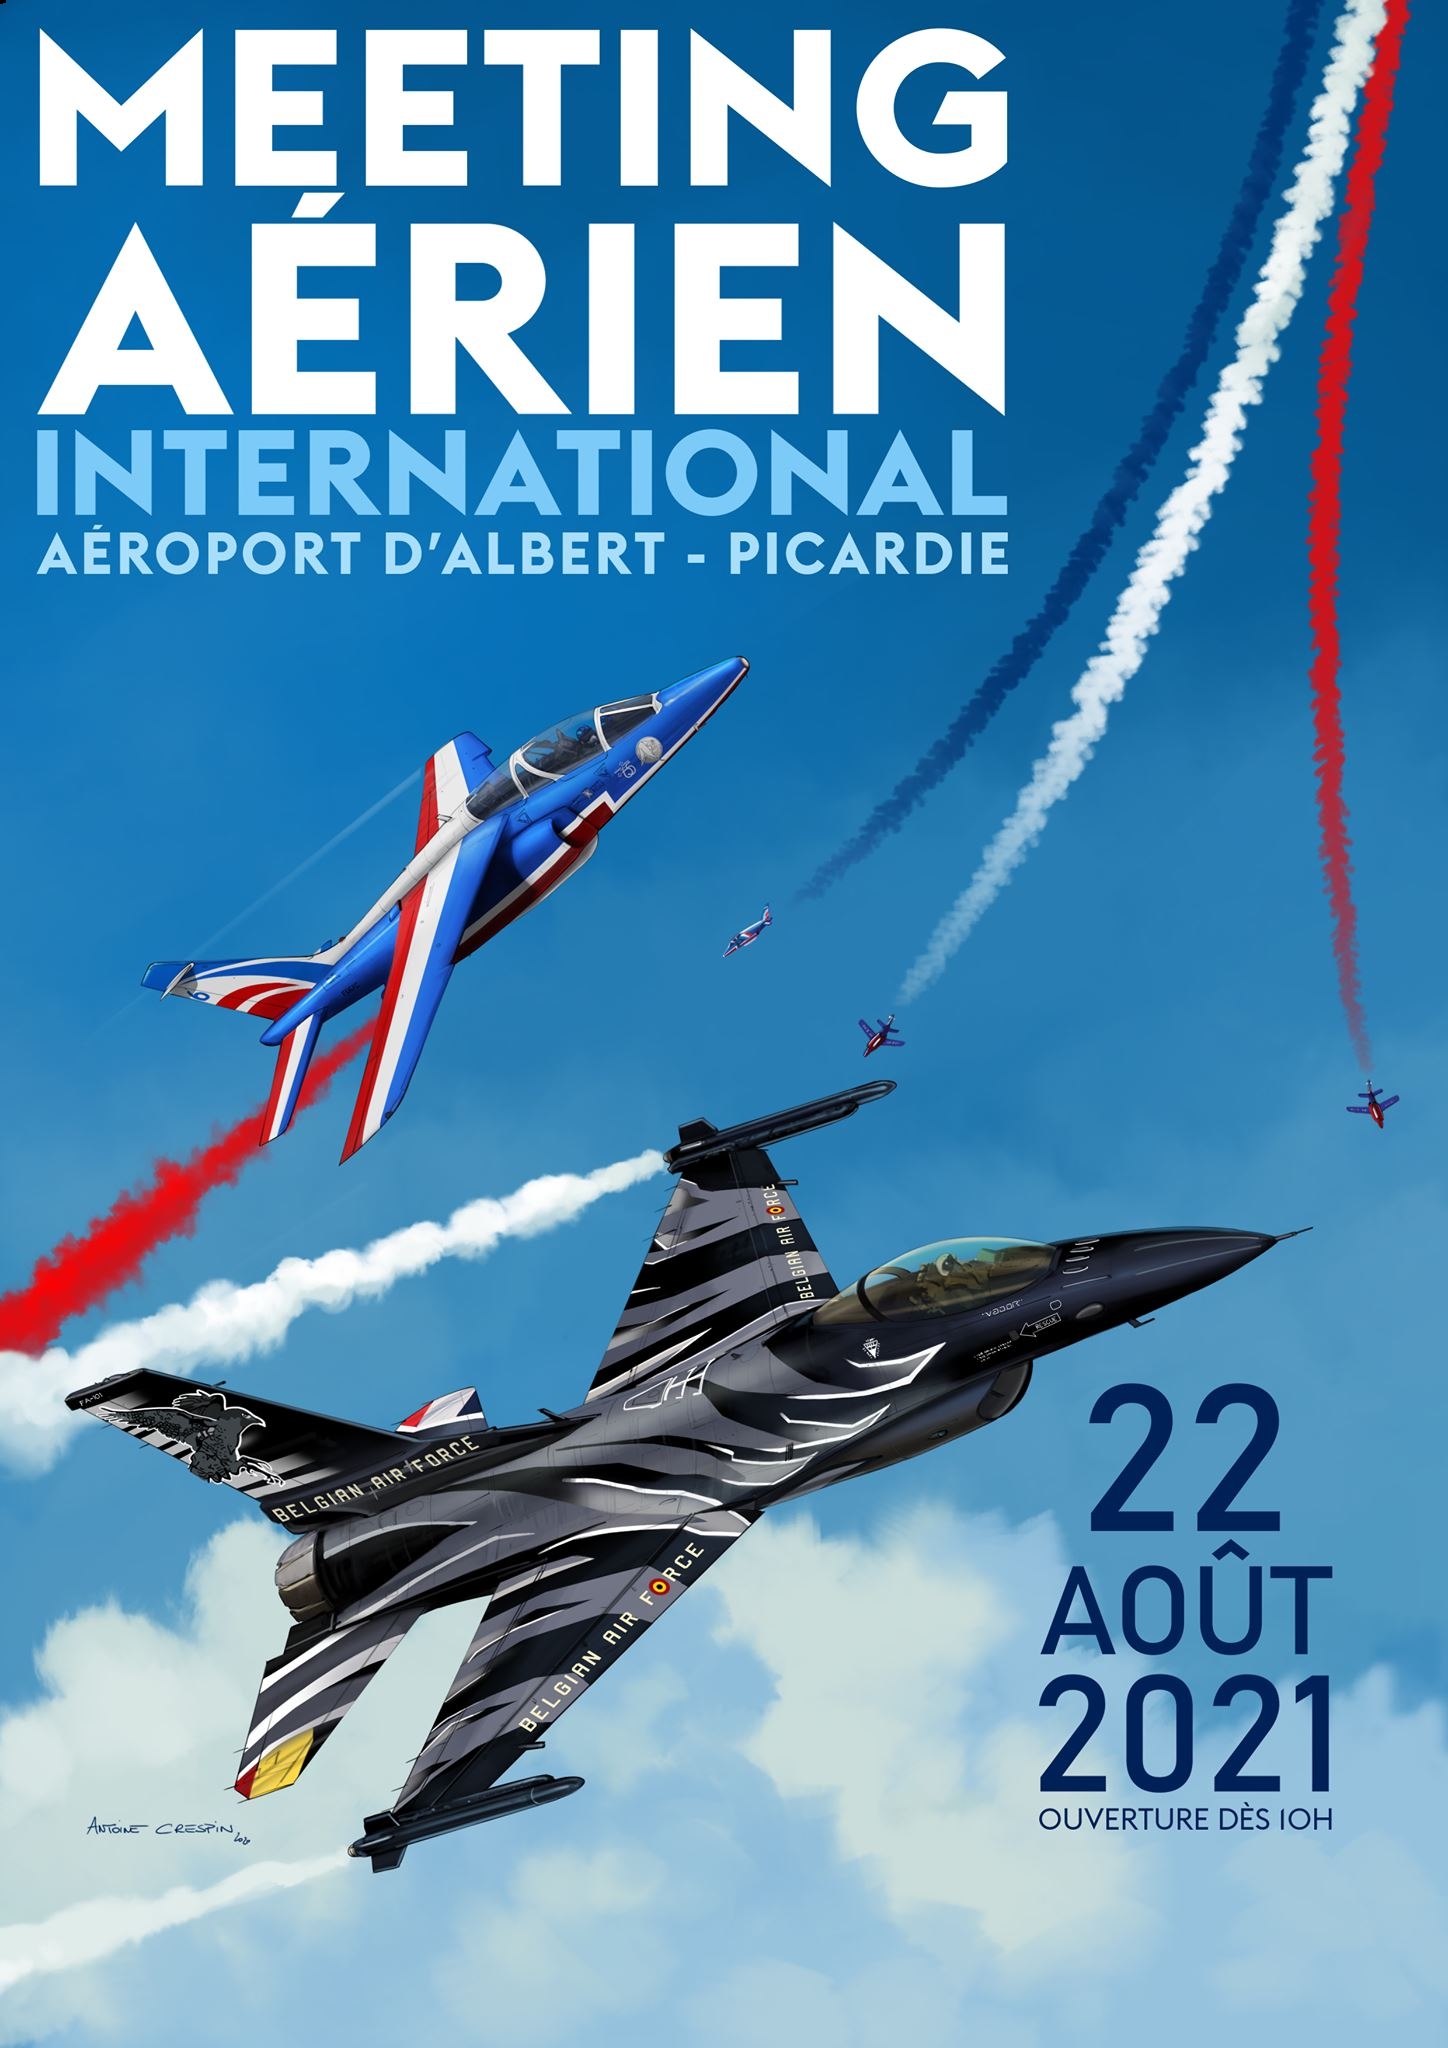 Meeting Aérien International de la Somme 2021 Aérodrome d'Albert Picardie airshow nord Hauts-de-France 